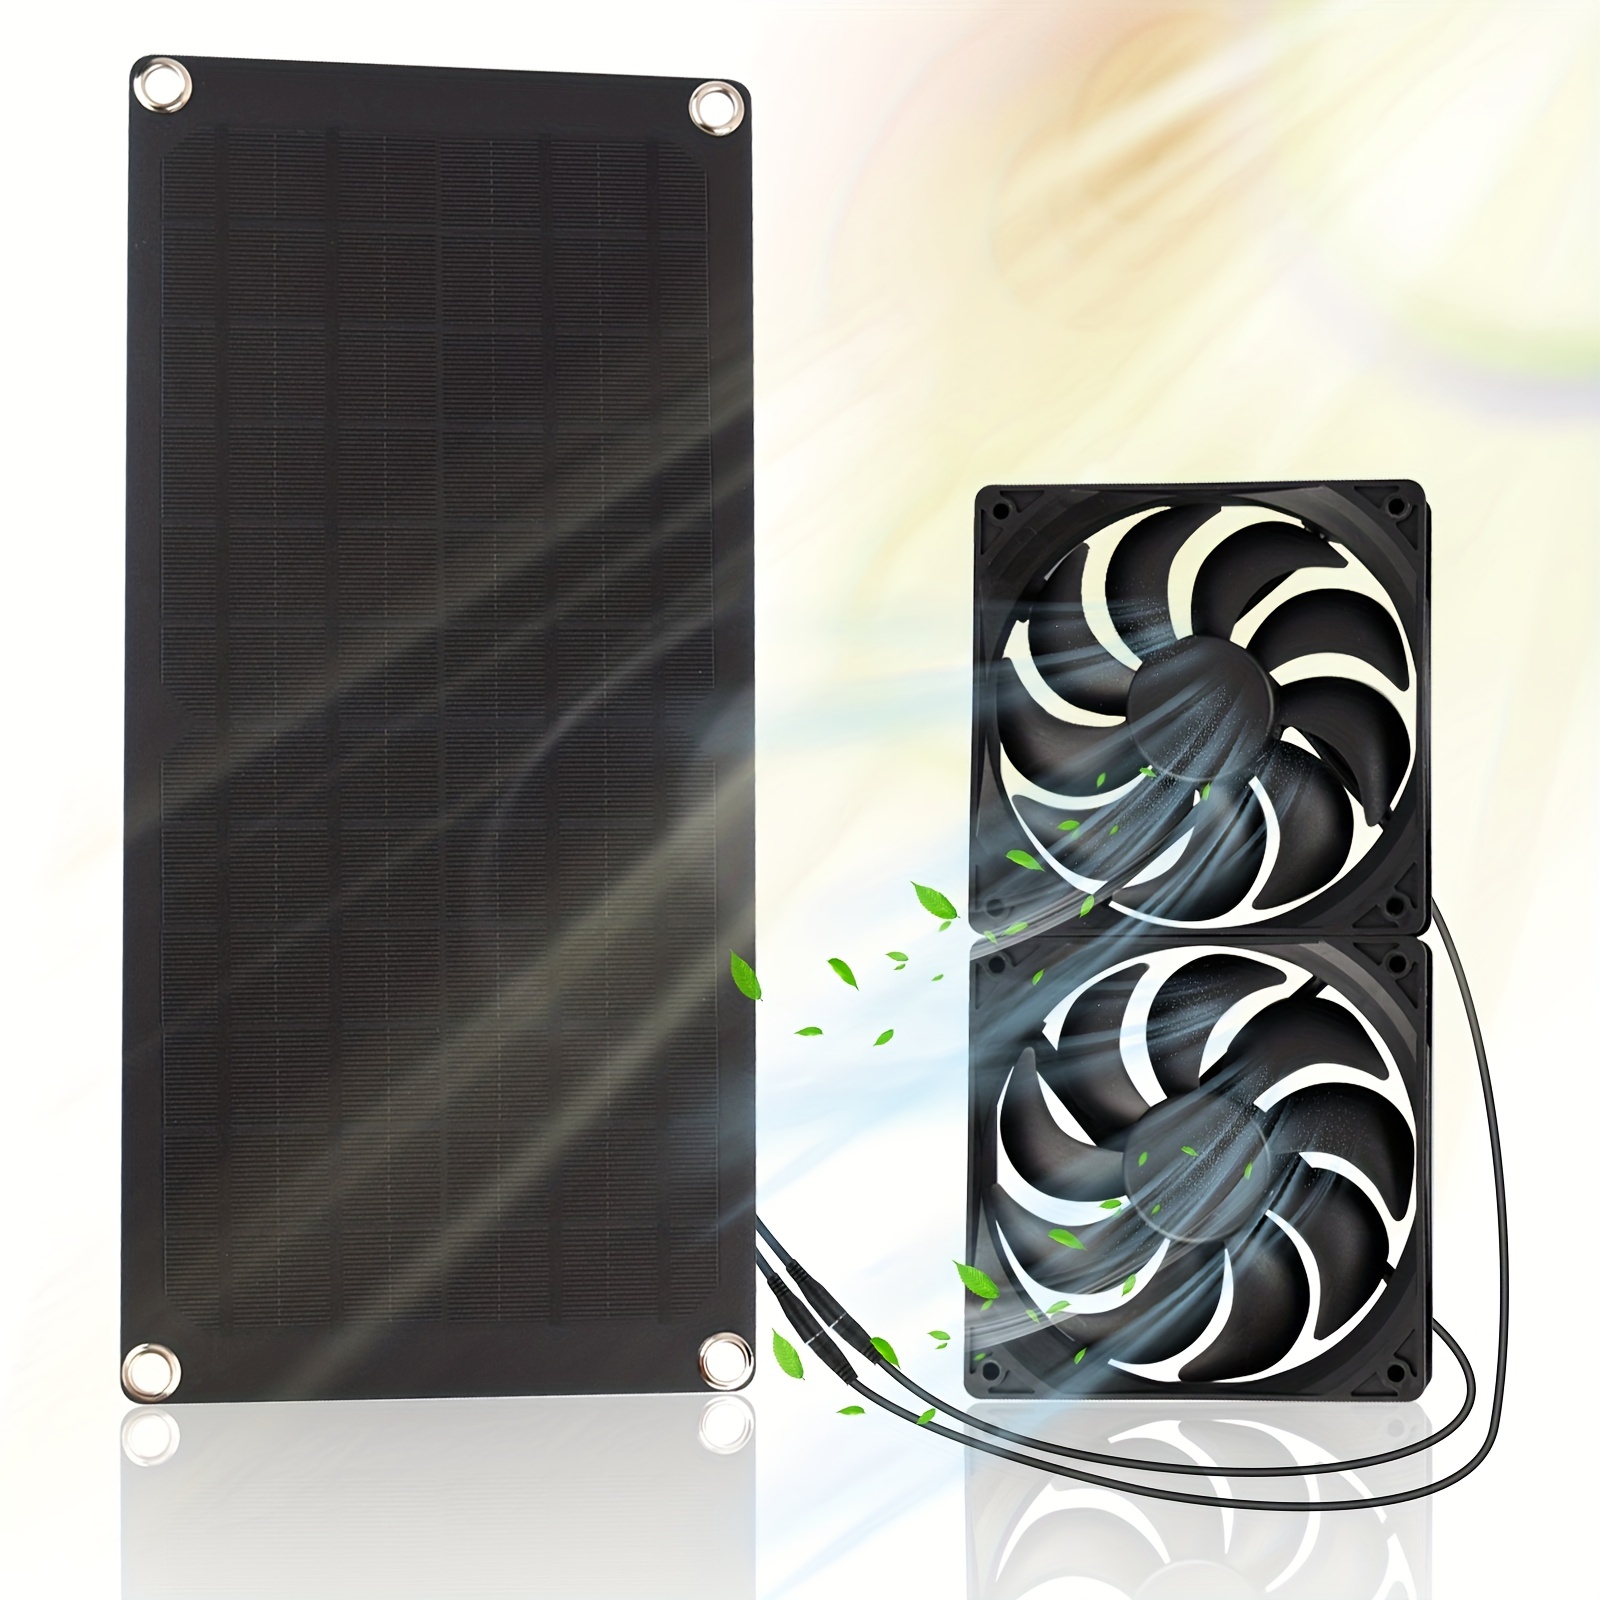 Solar Power Panel Exhaust Fan Solar Panel Fan Kit for Outside